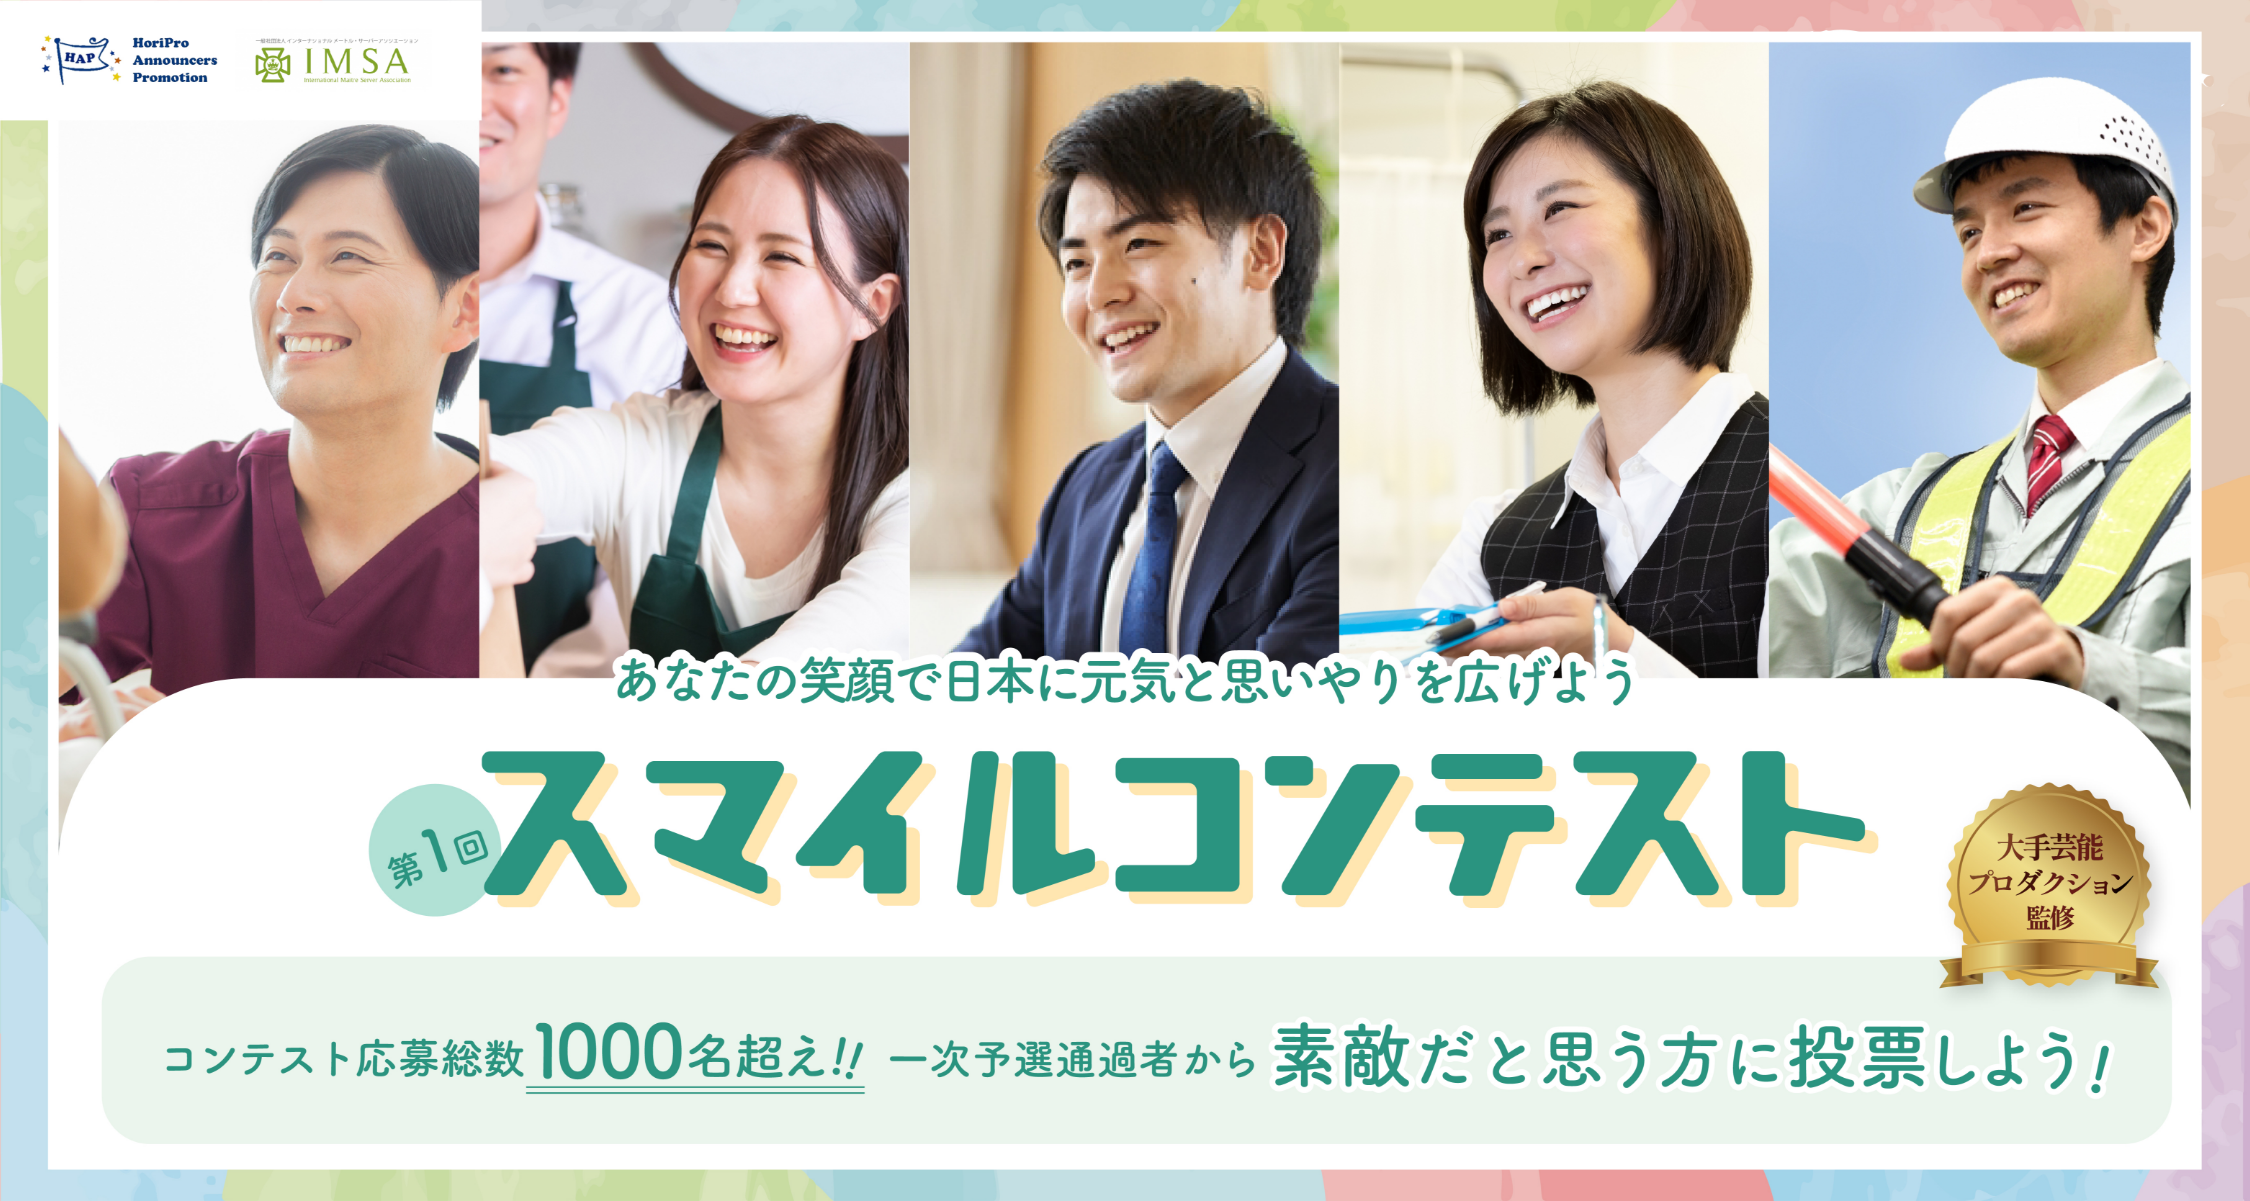 あなたの笑顔で日本に元気を広げよう！スマイルコンテスト